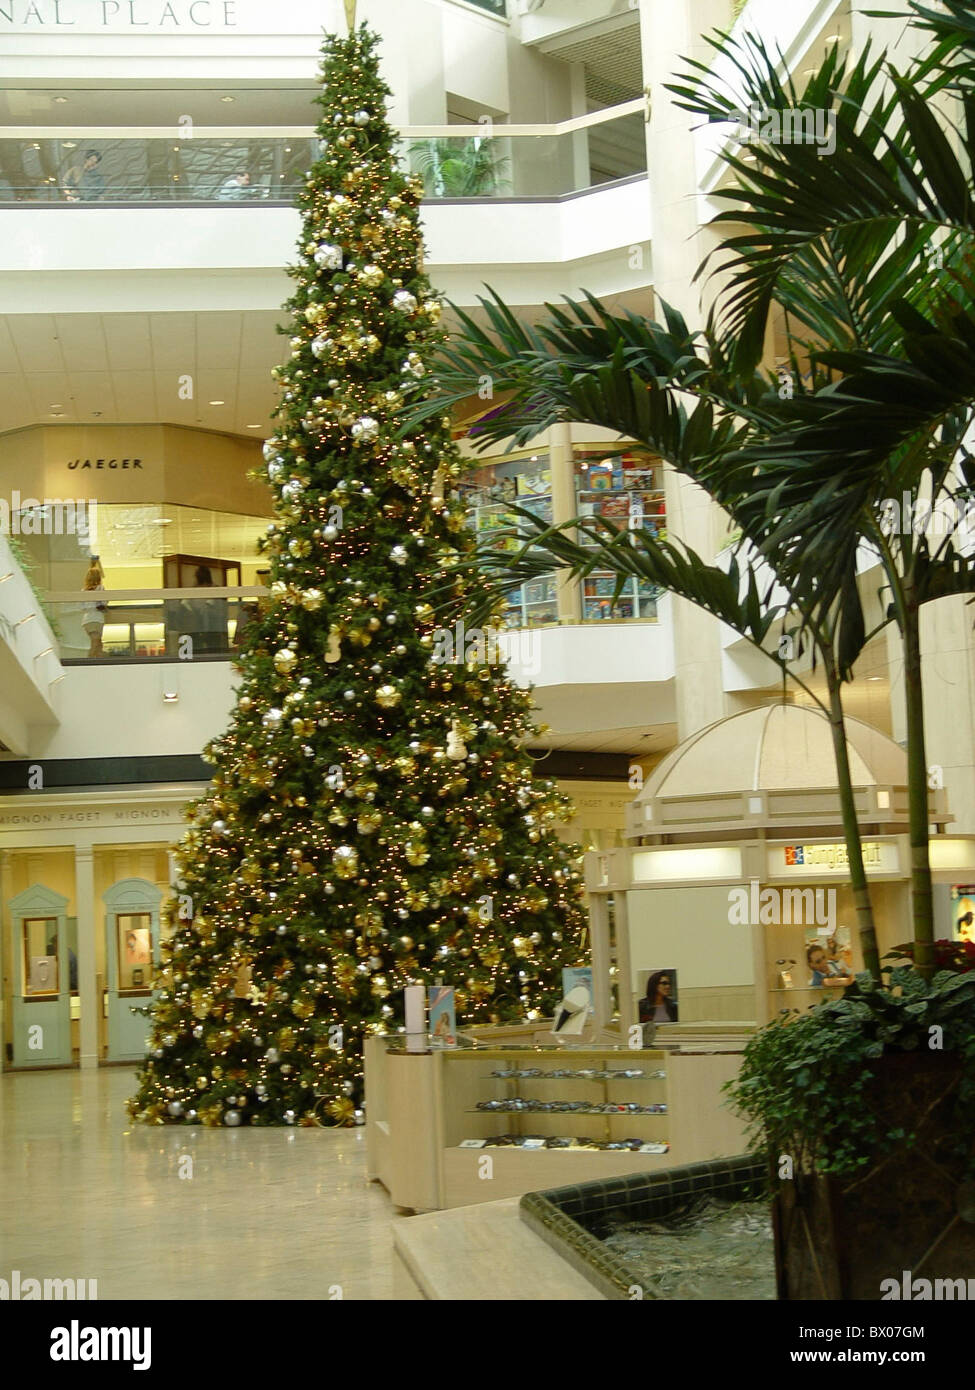 Árbol de Navidad del centro comercial Atrium recibidor tiendas relaciones comercio el comercio interior almacena Louisiana Foto de stock